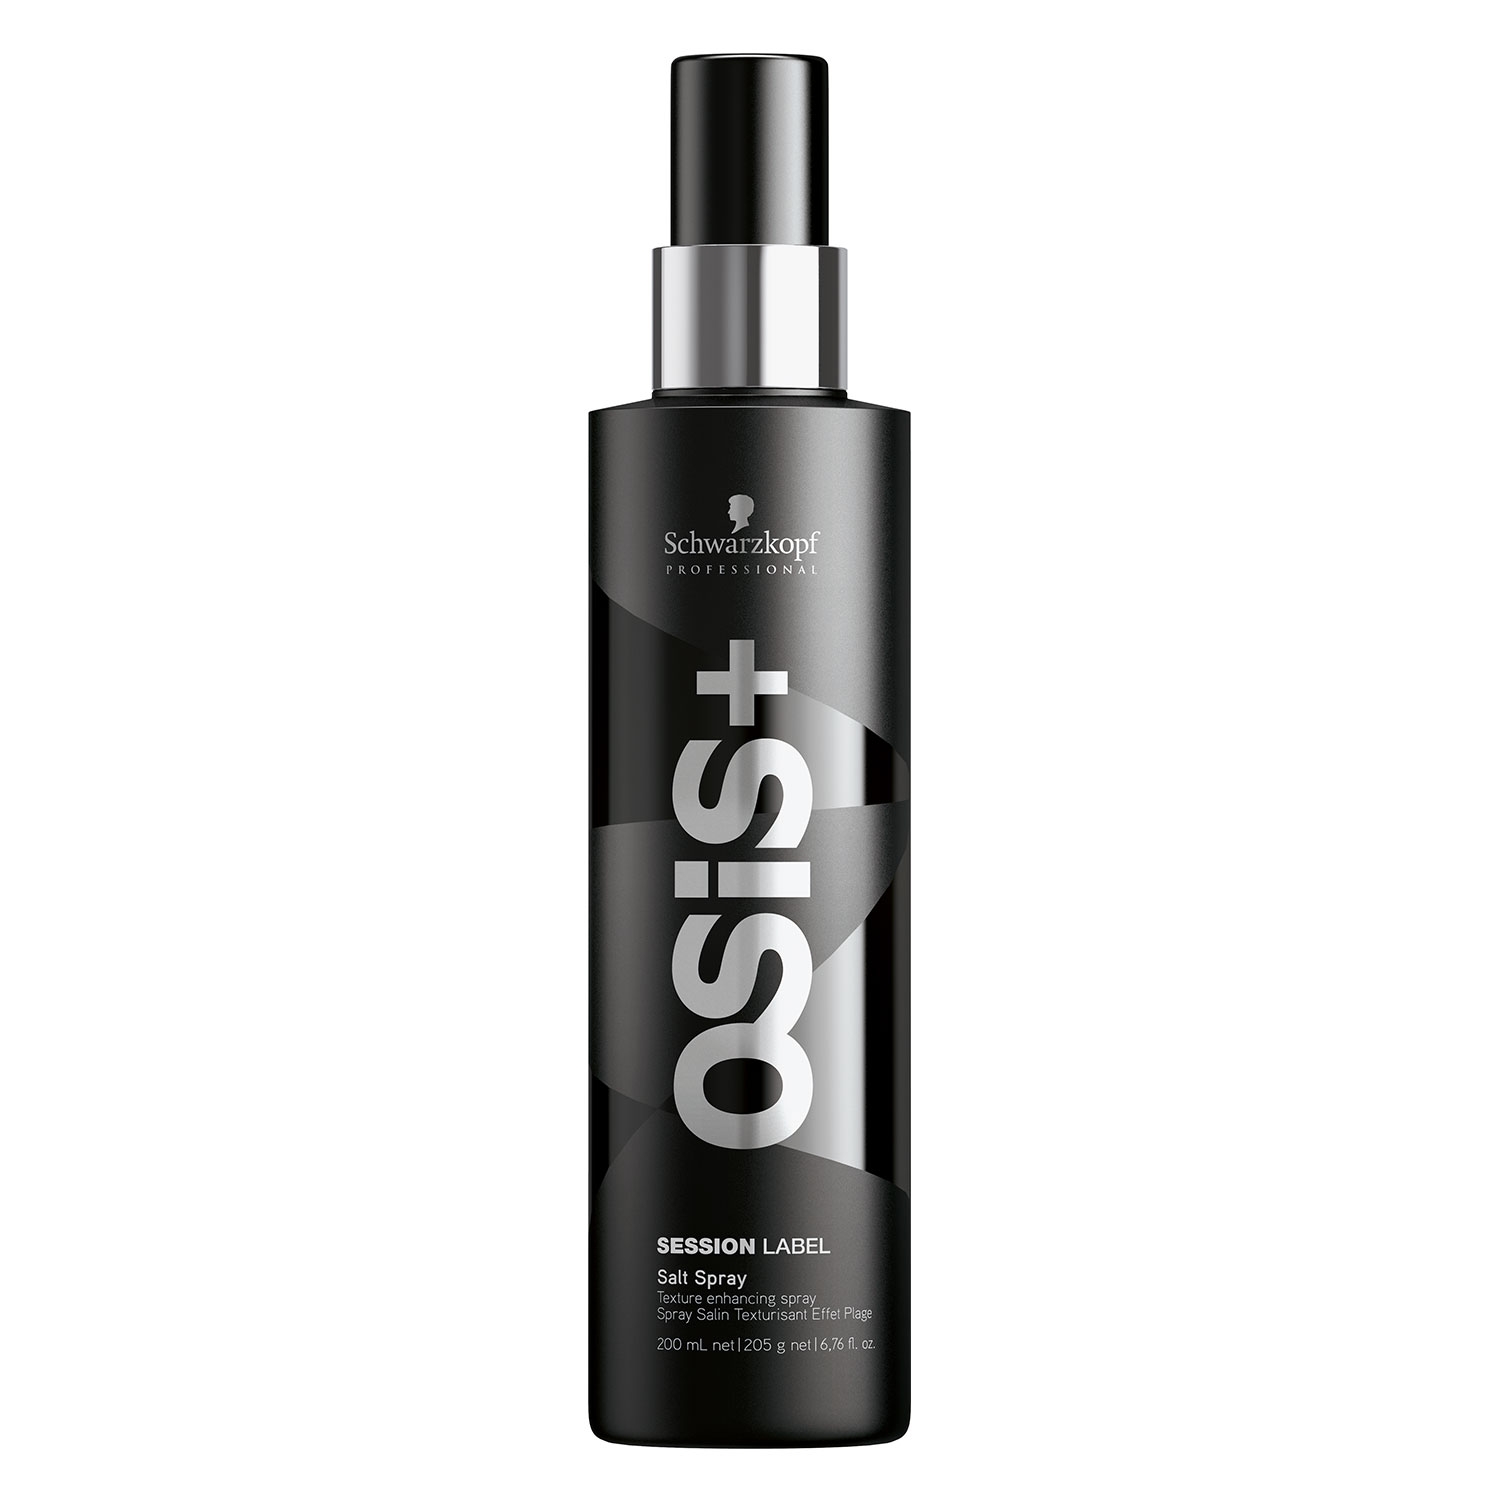 Produktbild von Osis Session Label - Salt Spray